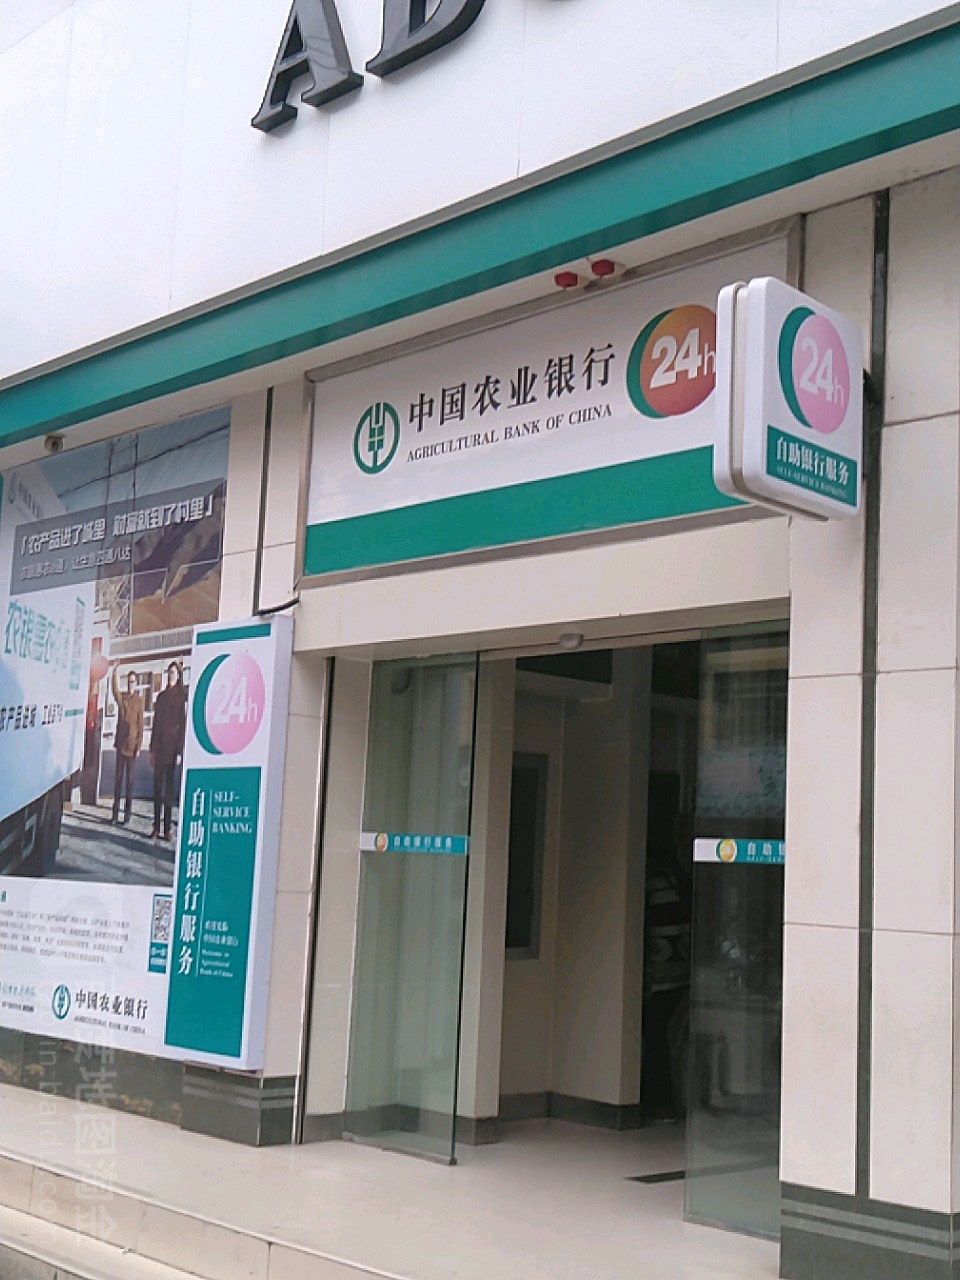 中国农业银行24小时自助银行(马头镇平新路店)